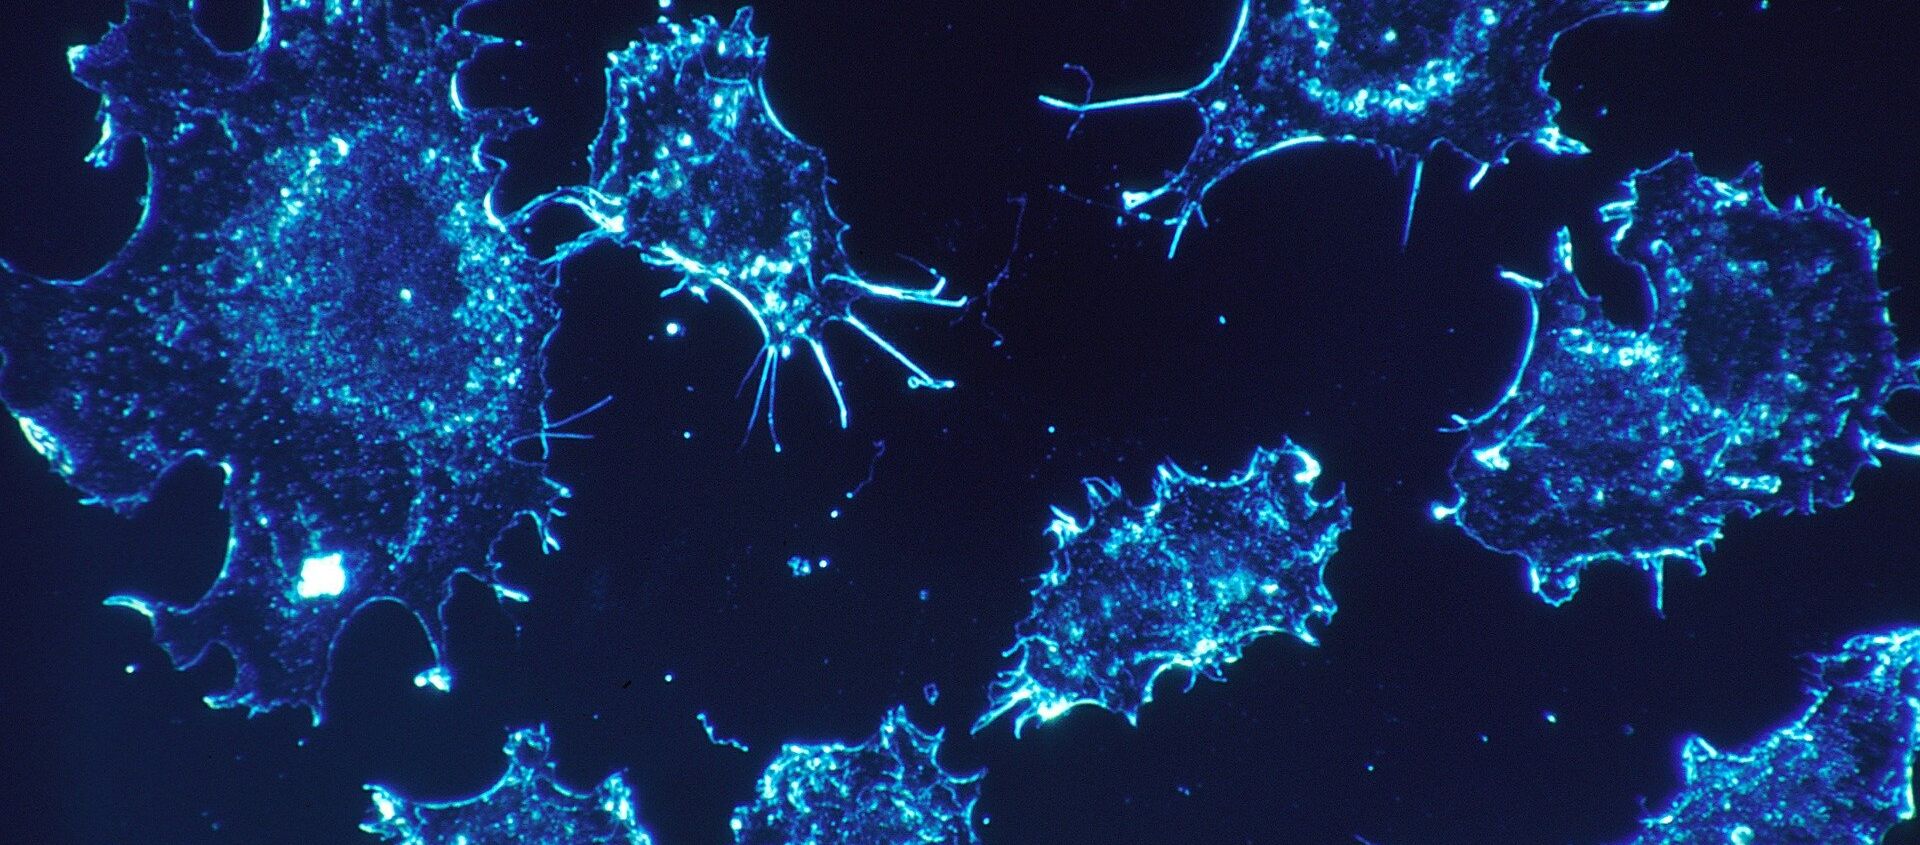 خلايا سرطانية - سبوتنيك عربي, 1920, 25.03.2021